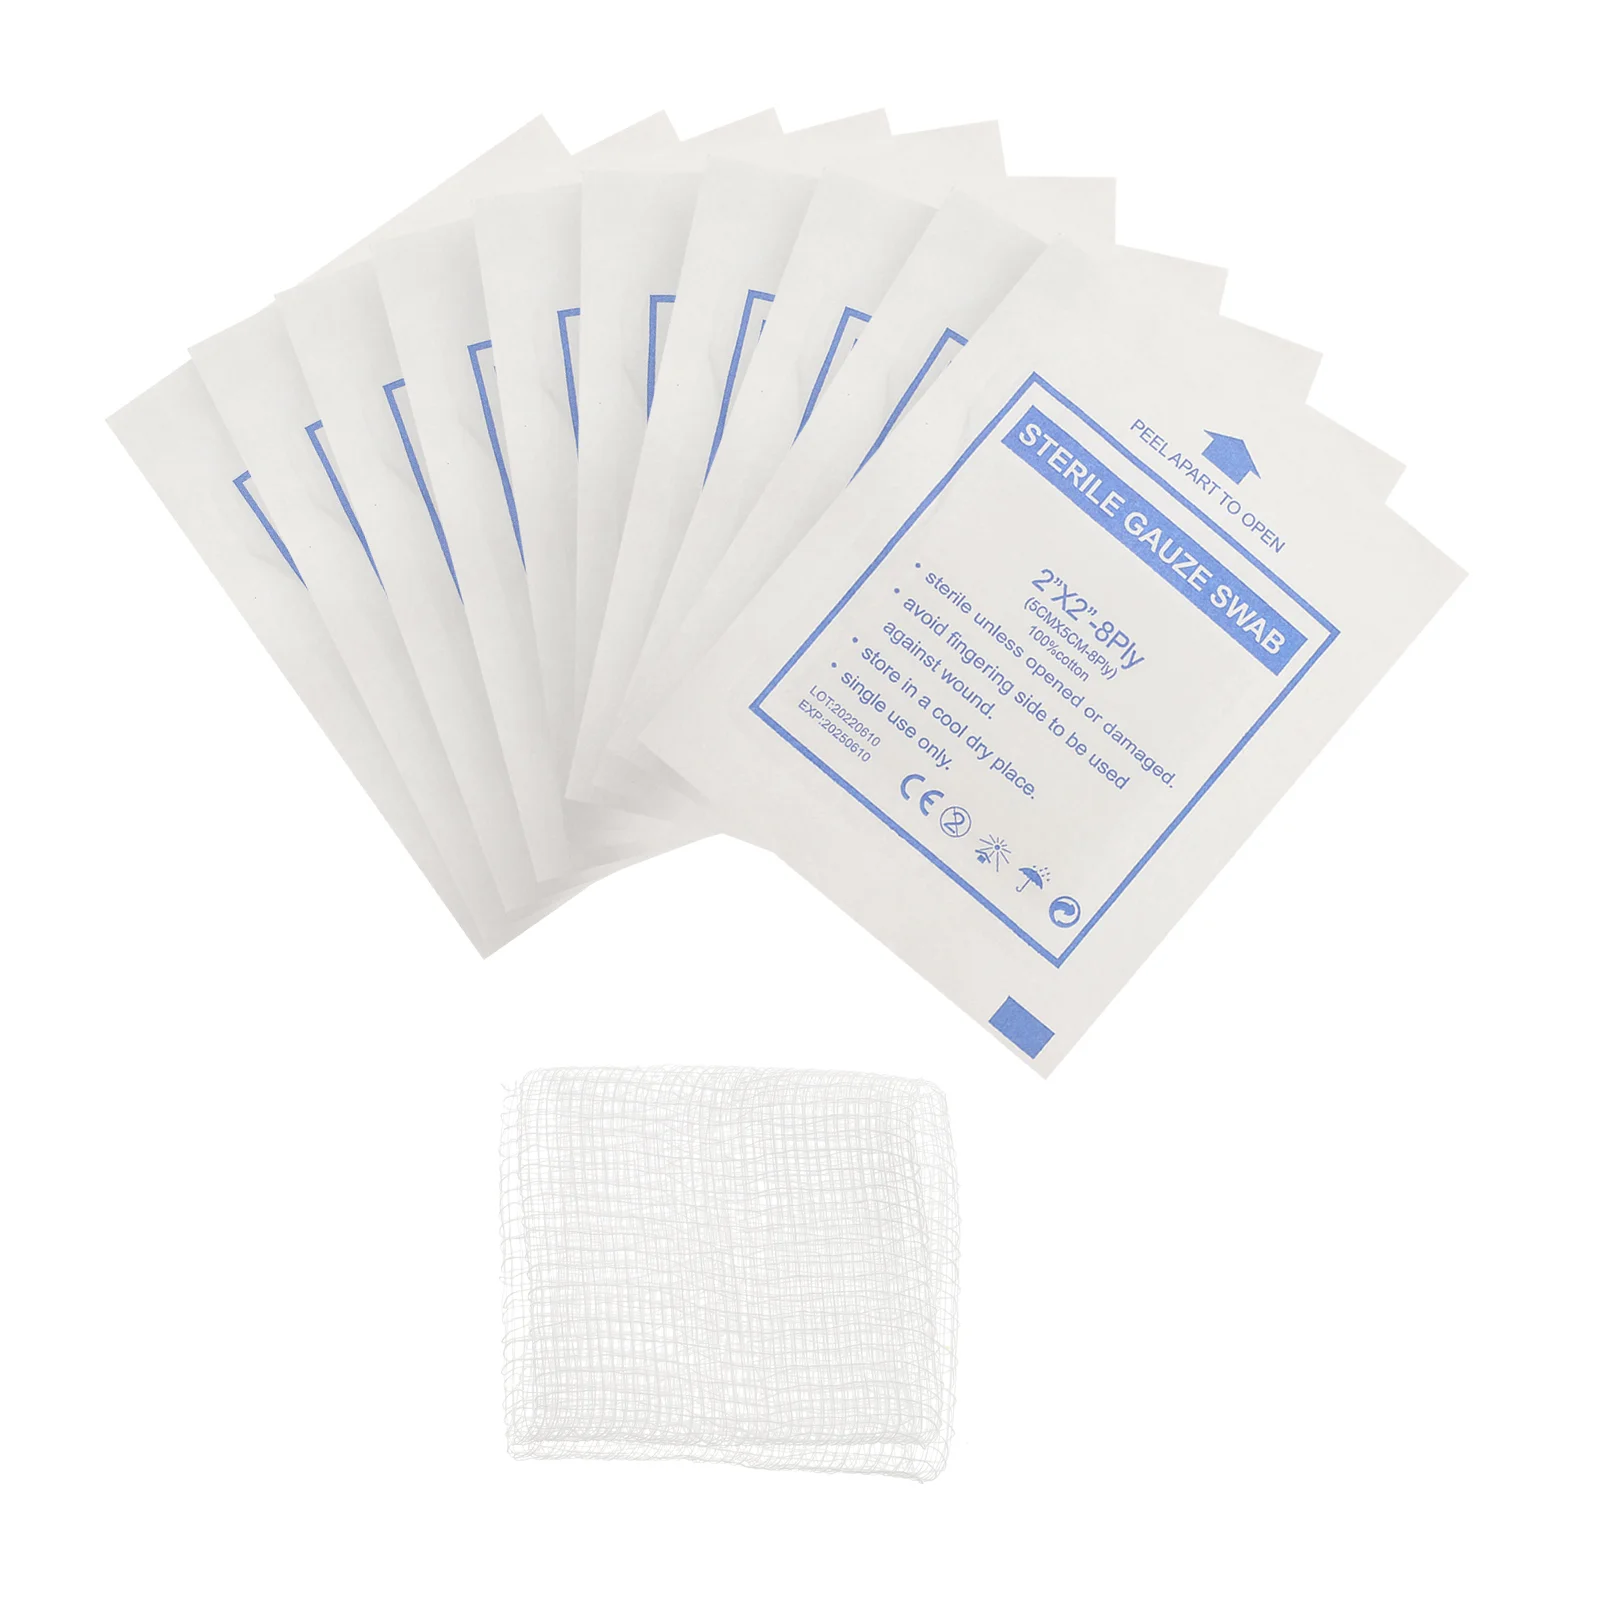 

30 Pcs Cotton Pads Face Gauze 5x5 Nursing Supplies Sterile 4x4 Wound Sponge Dressing Adhesive Tape